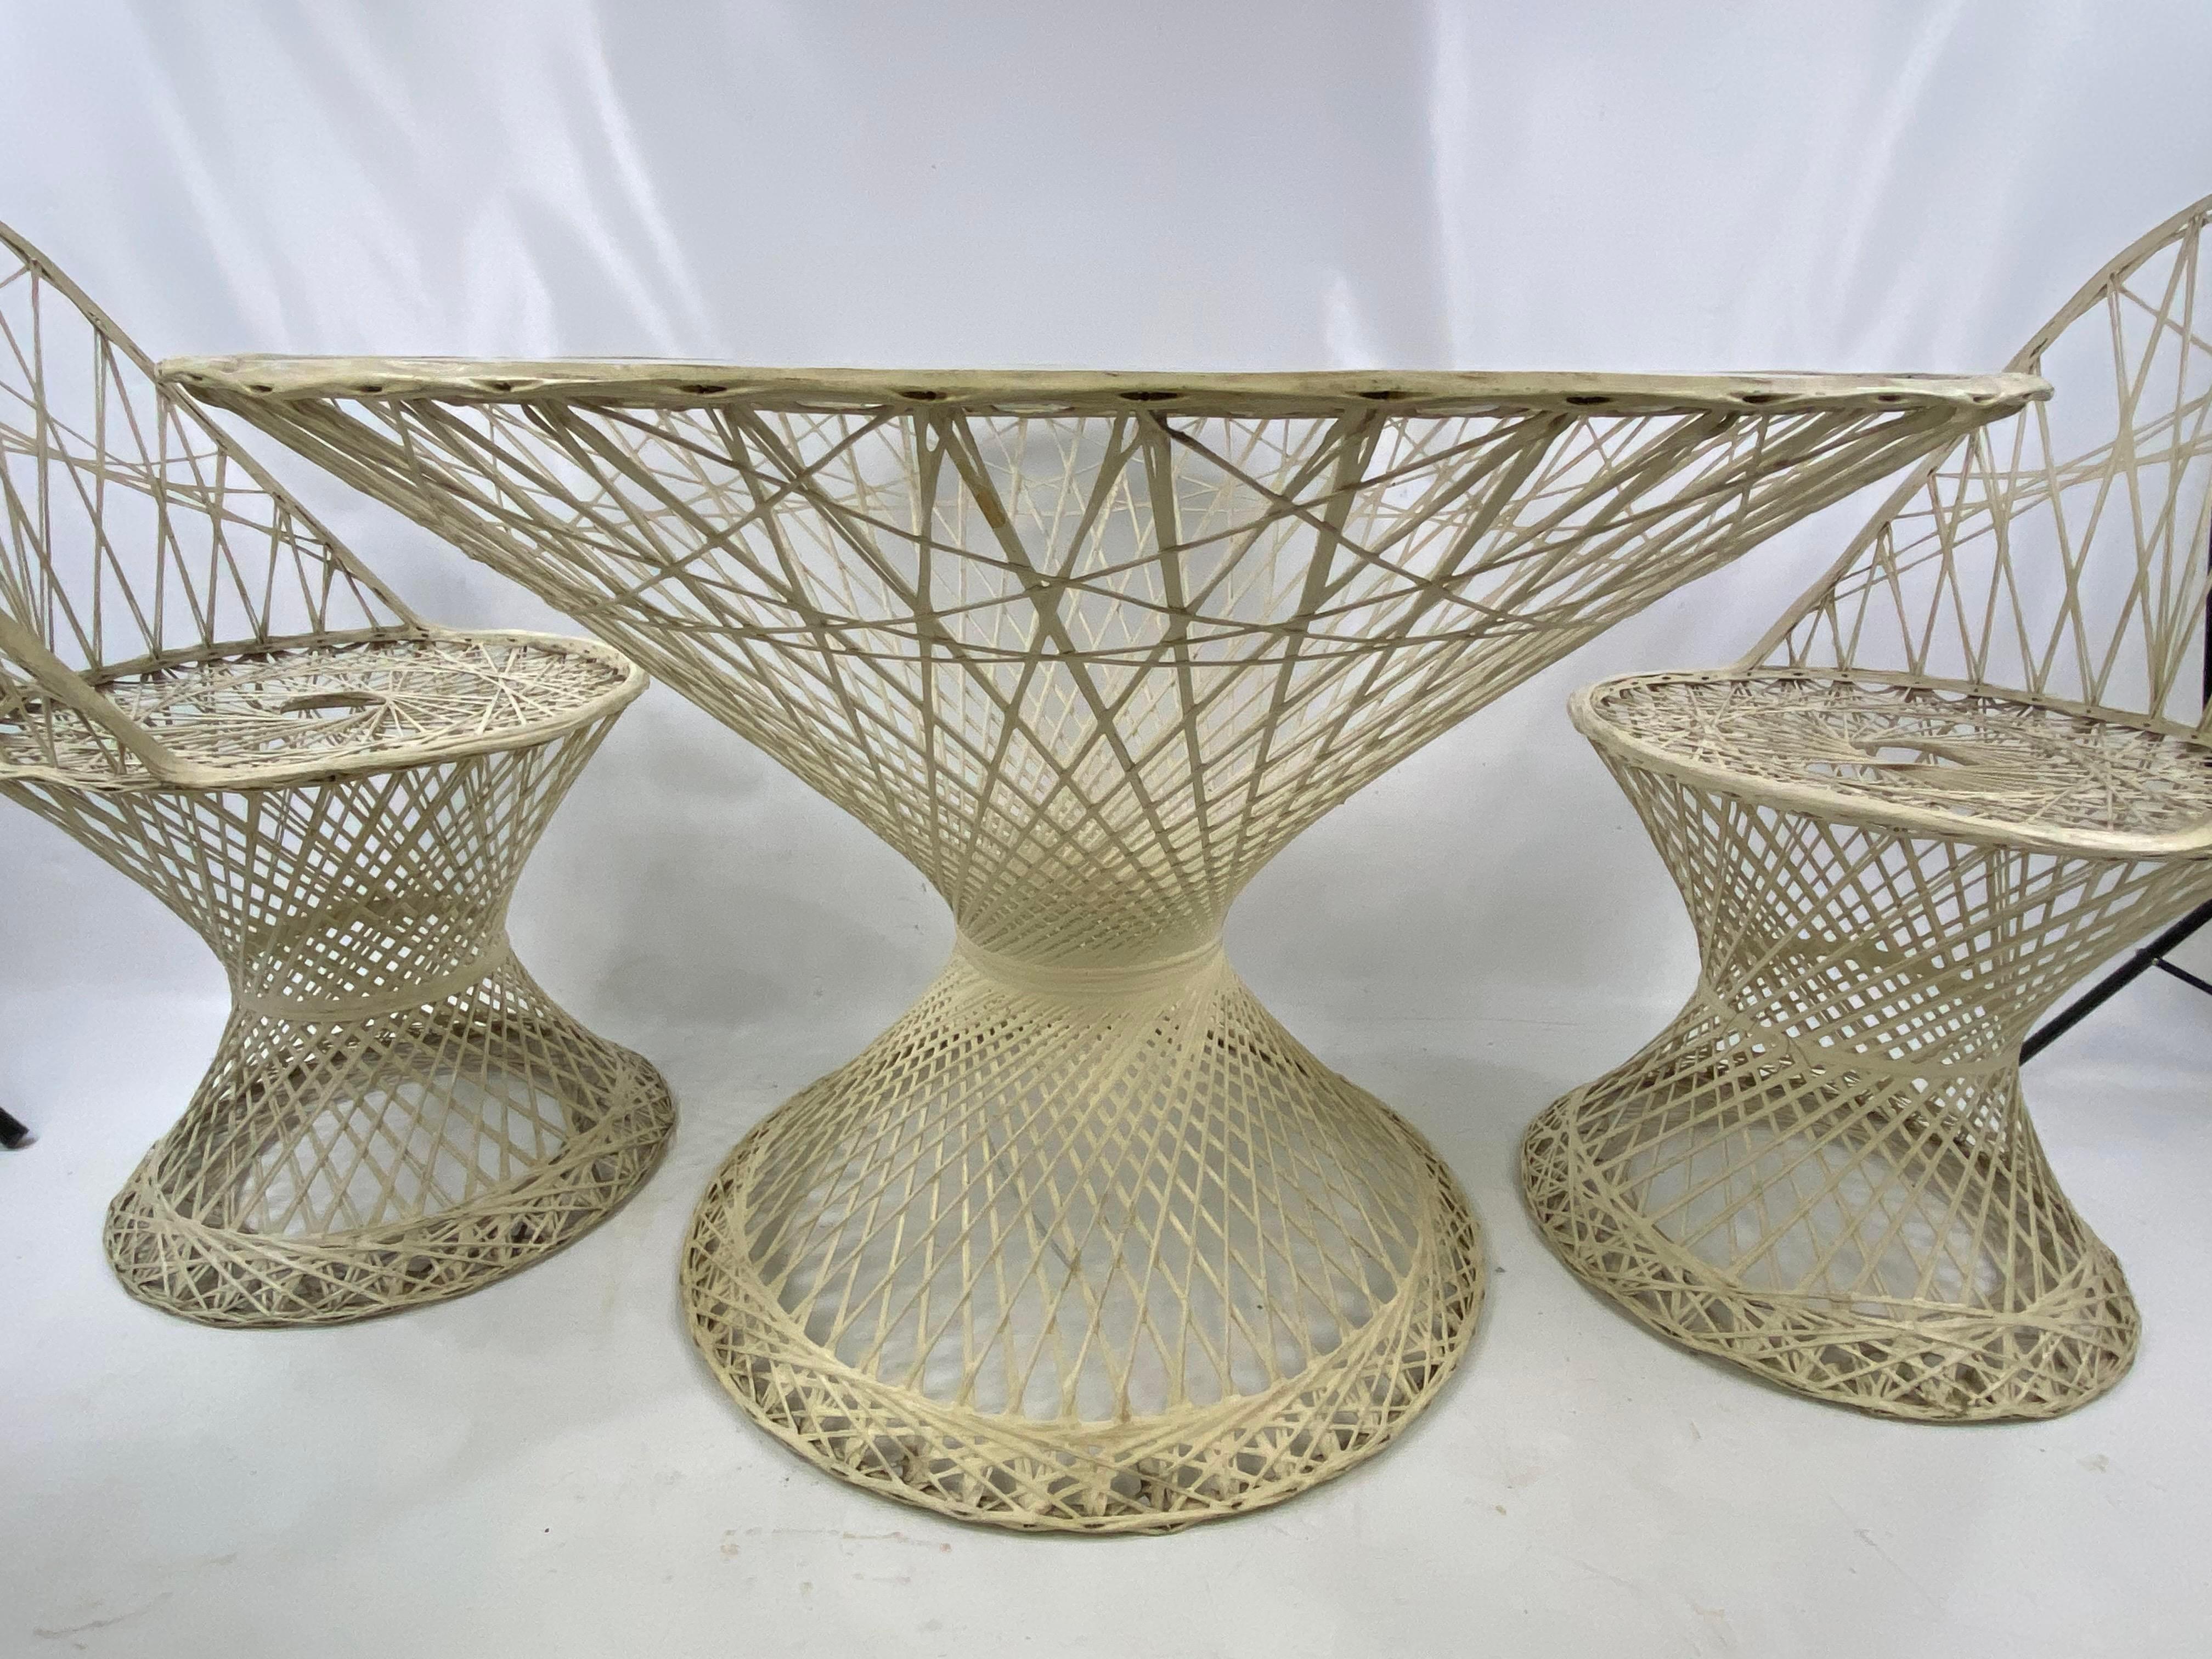 Table et chaises en fibre de verre Russel Woodard, moderne du milieu du siècle, 4 pièces
Mesures du tableau. Hauteur 28,5